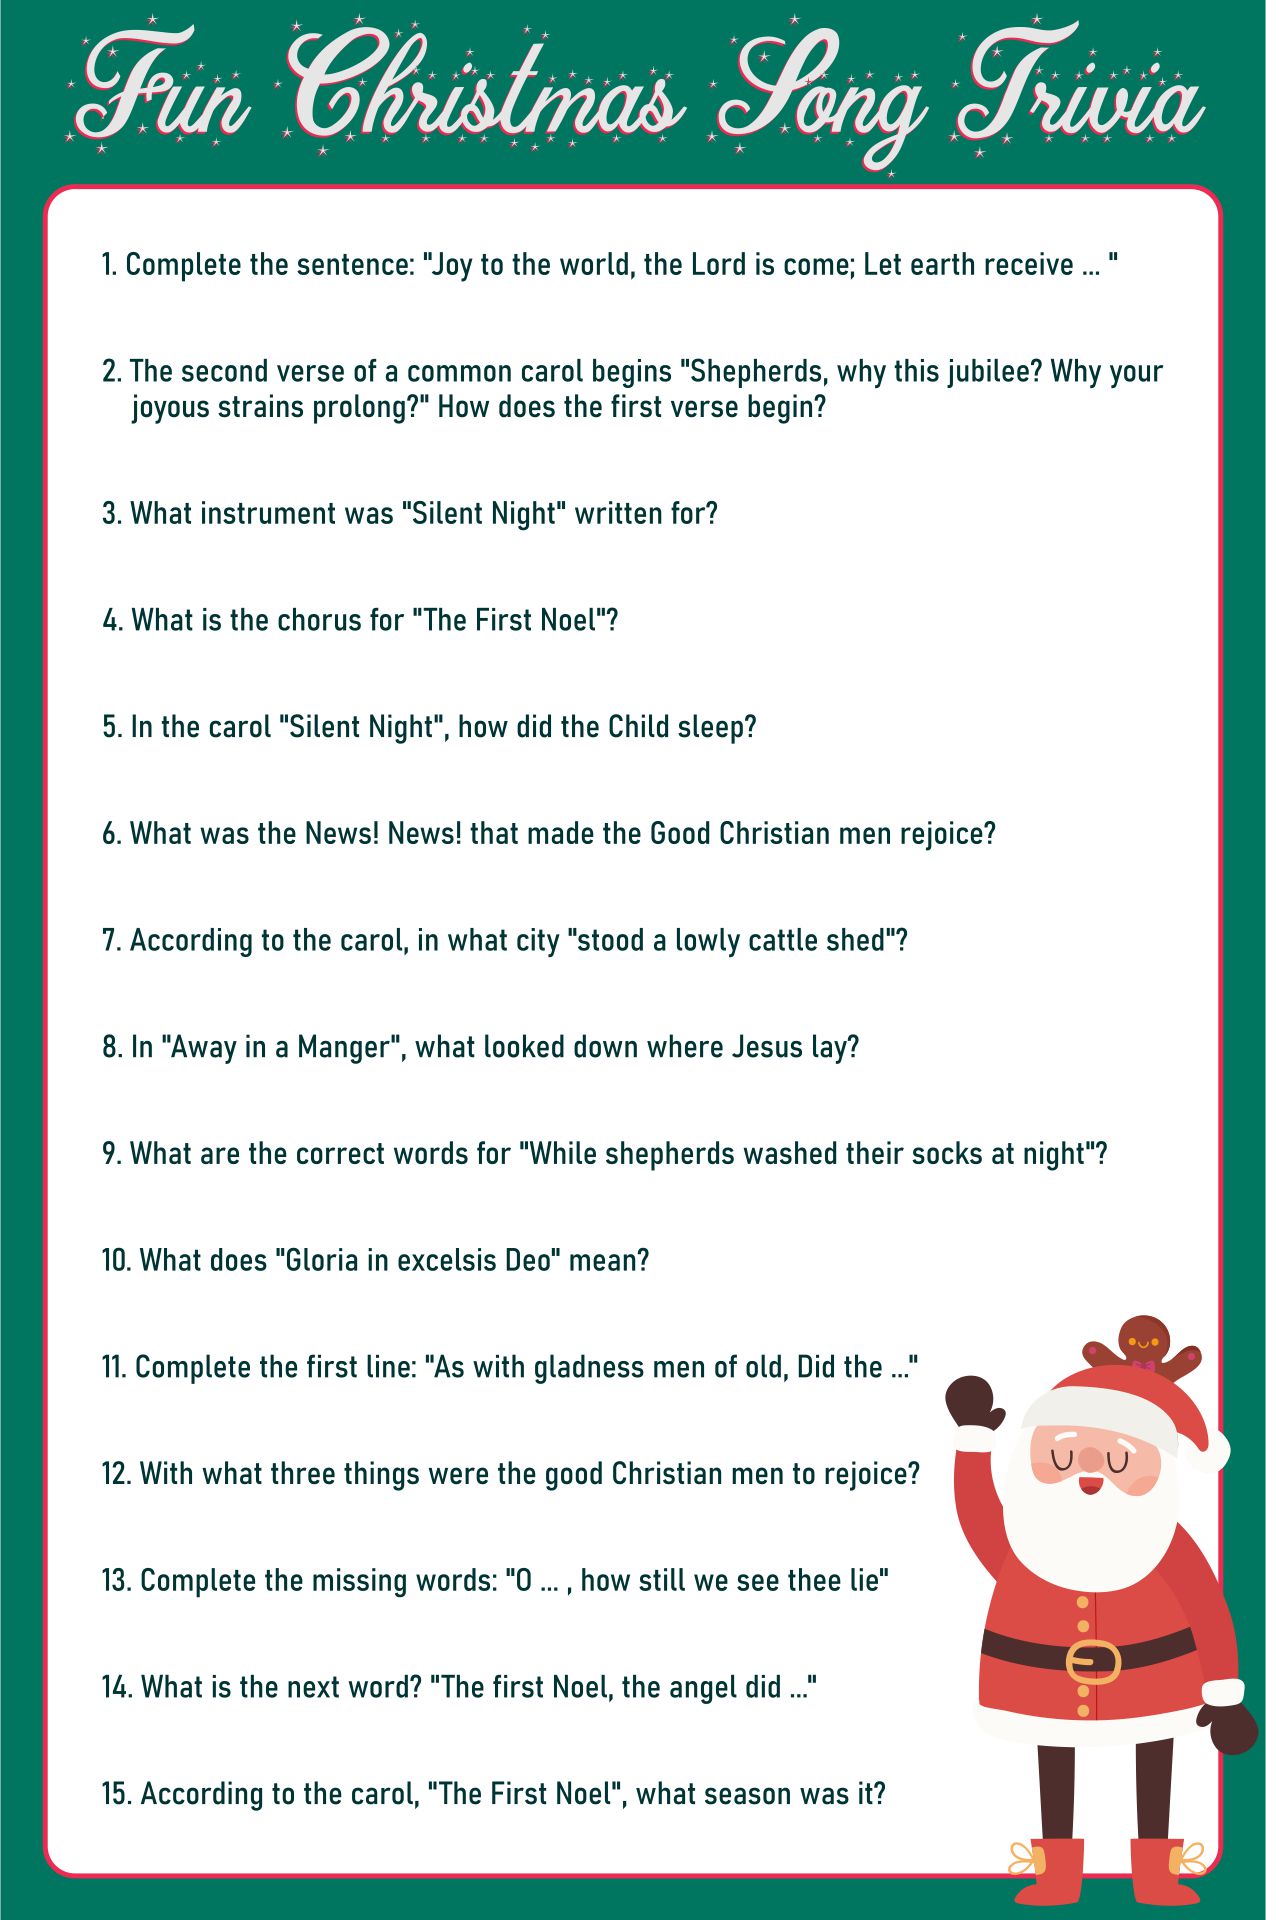 Fun Christmas Song Trivia Games